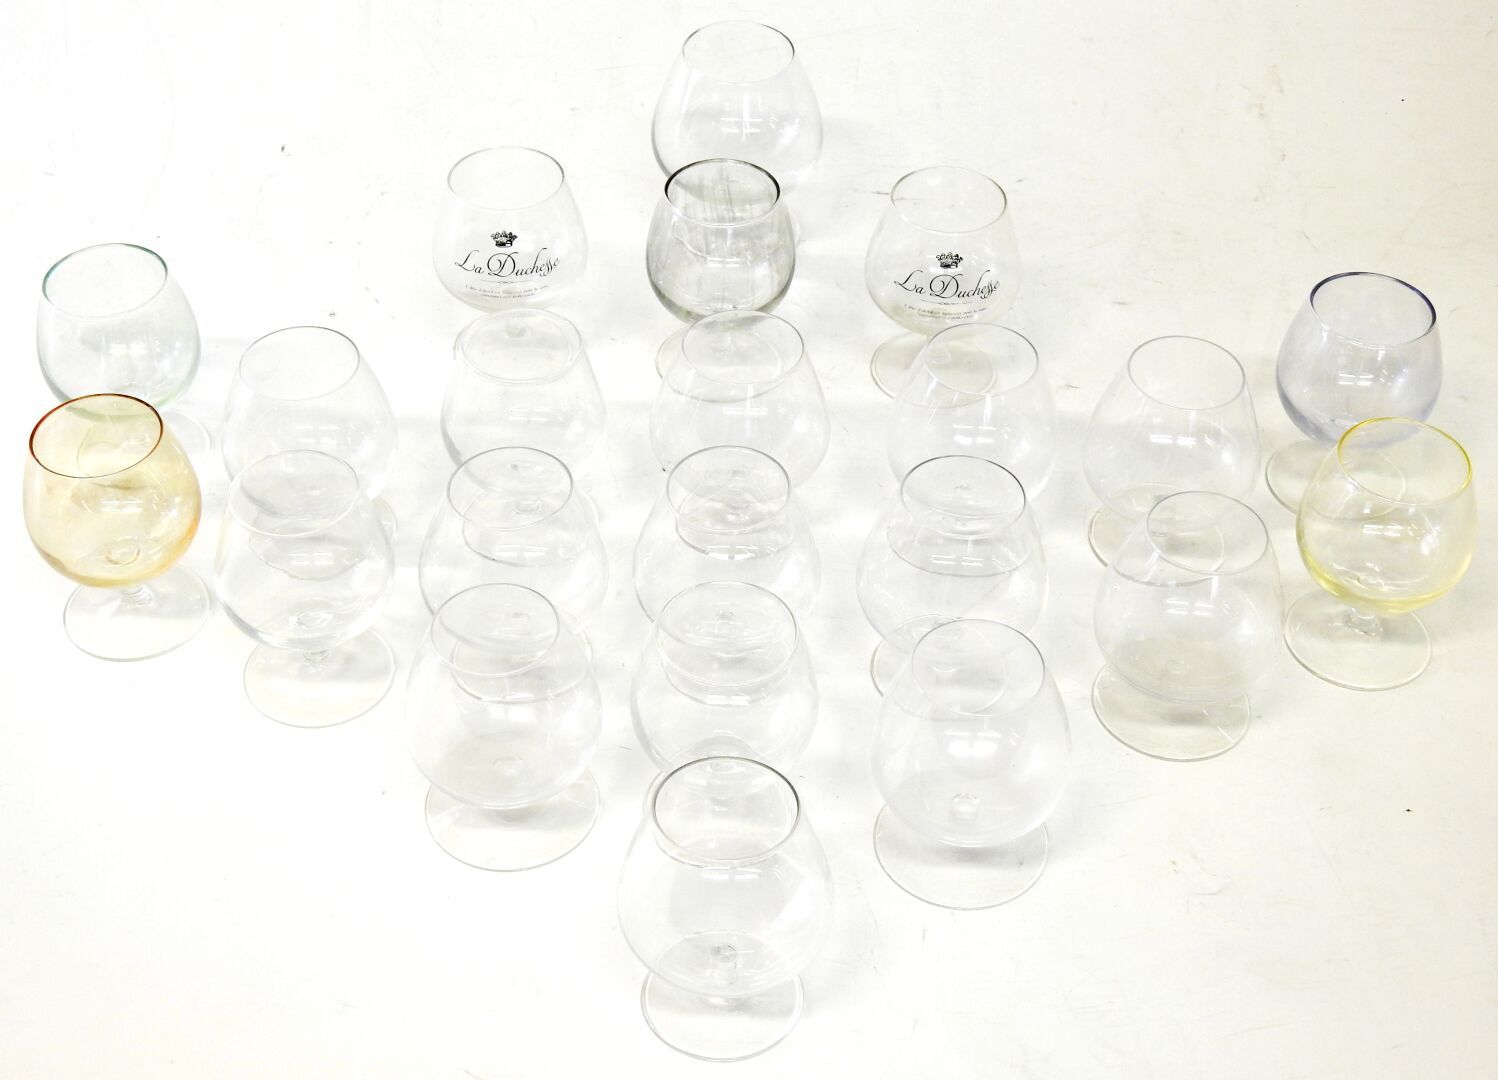 Null 二十二个玻璃和水晶白兰地杯套装

不同的尺寸

穿着。